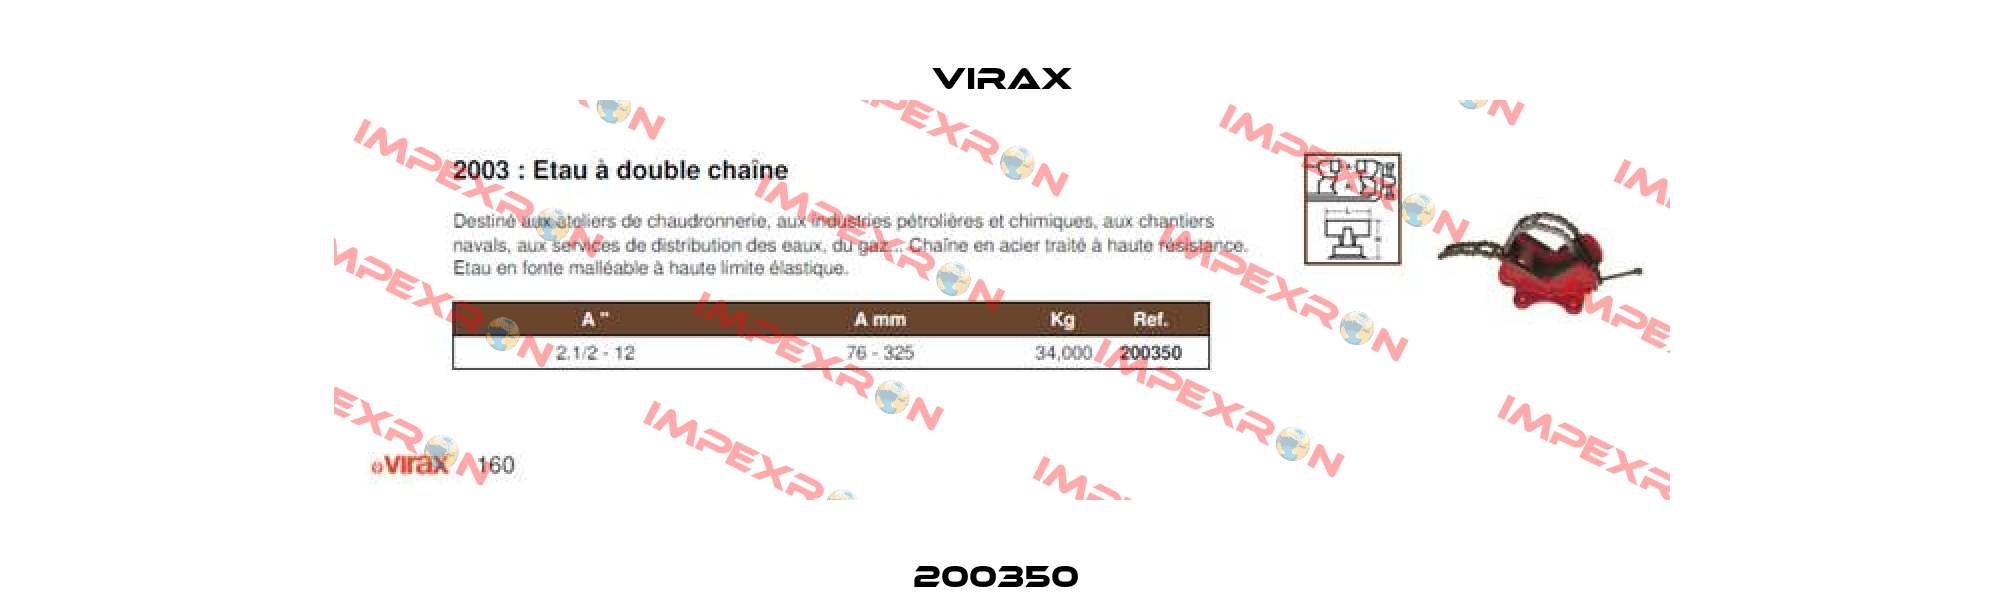 200350  Virax